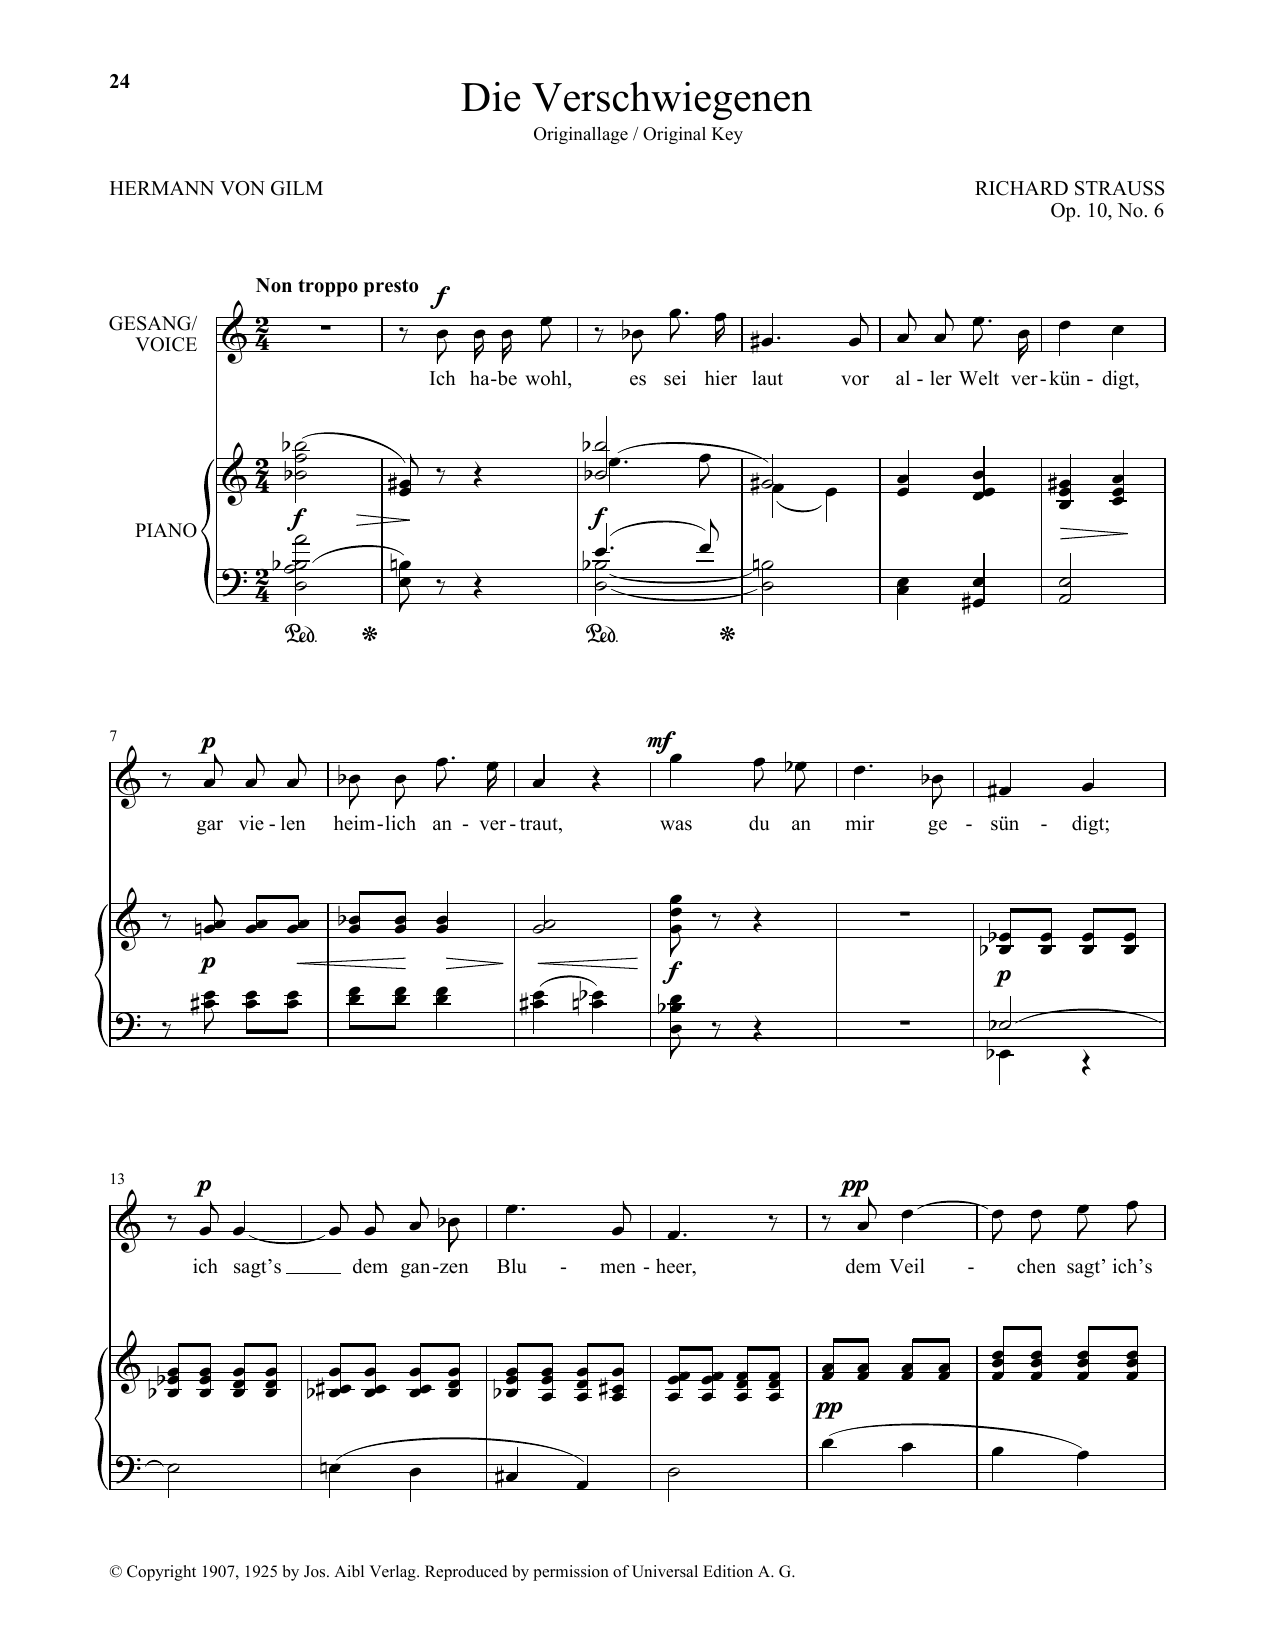 Download Richard Strauss Die Verschwiegenen (High Voice) Sheet Music